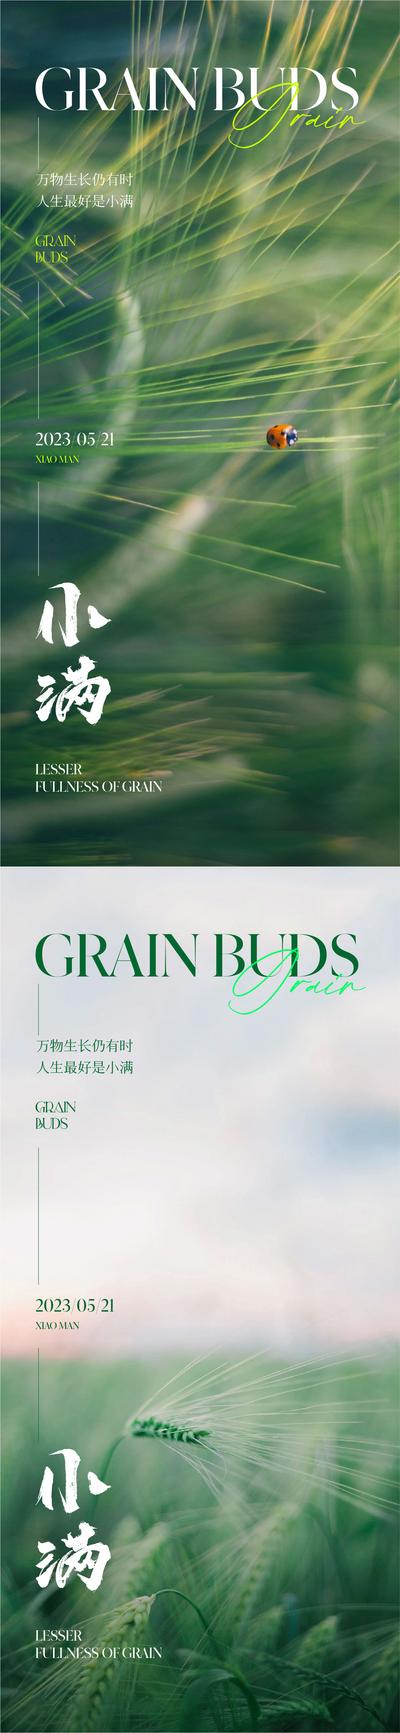 南门网 广告 海报 地产 小满 节气 质感 美业 美图 唯美 清新 高级 品质 麦子 麦穗 谷物